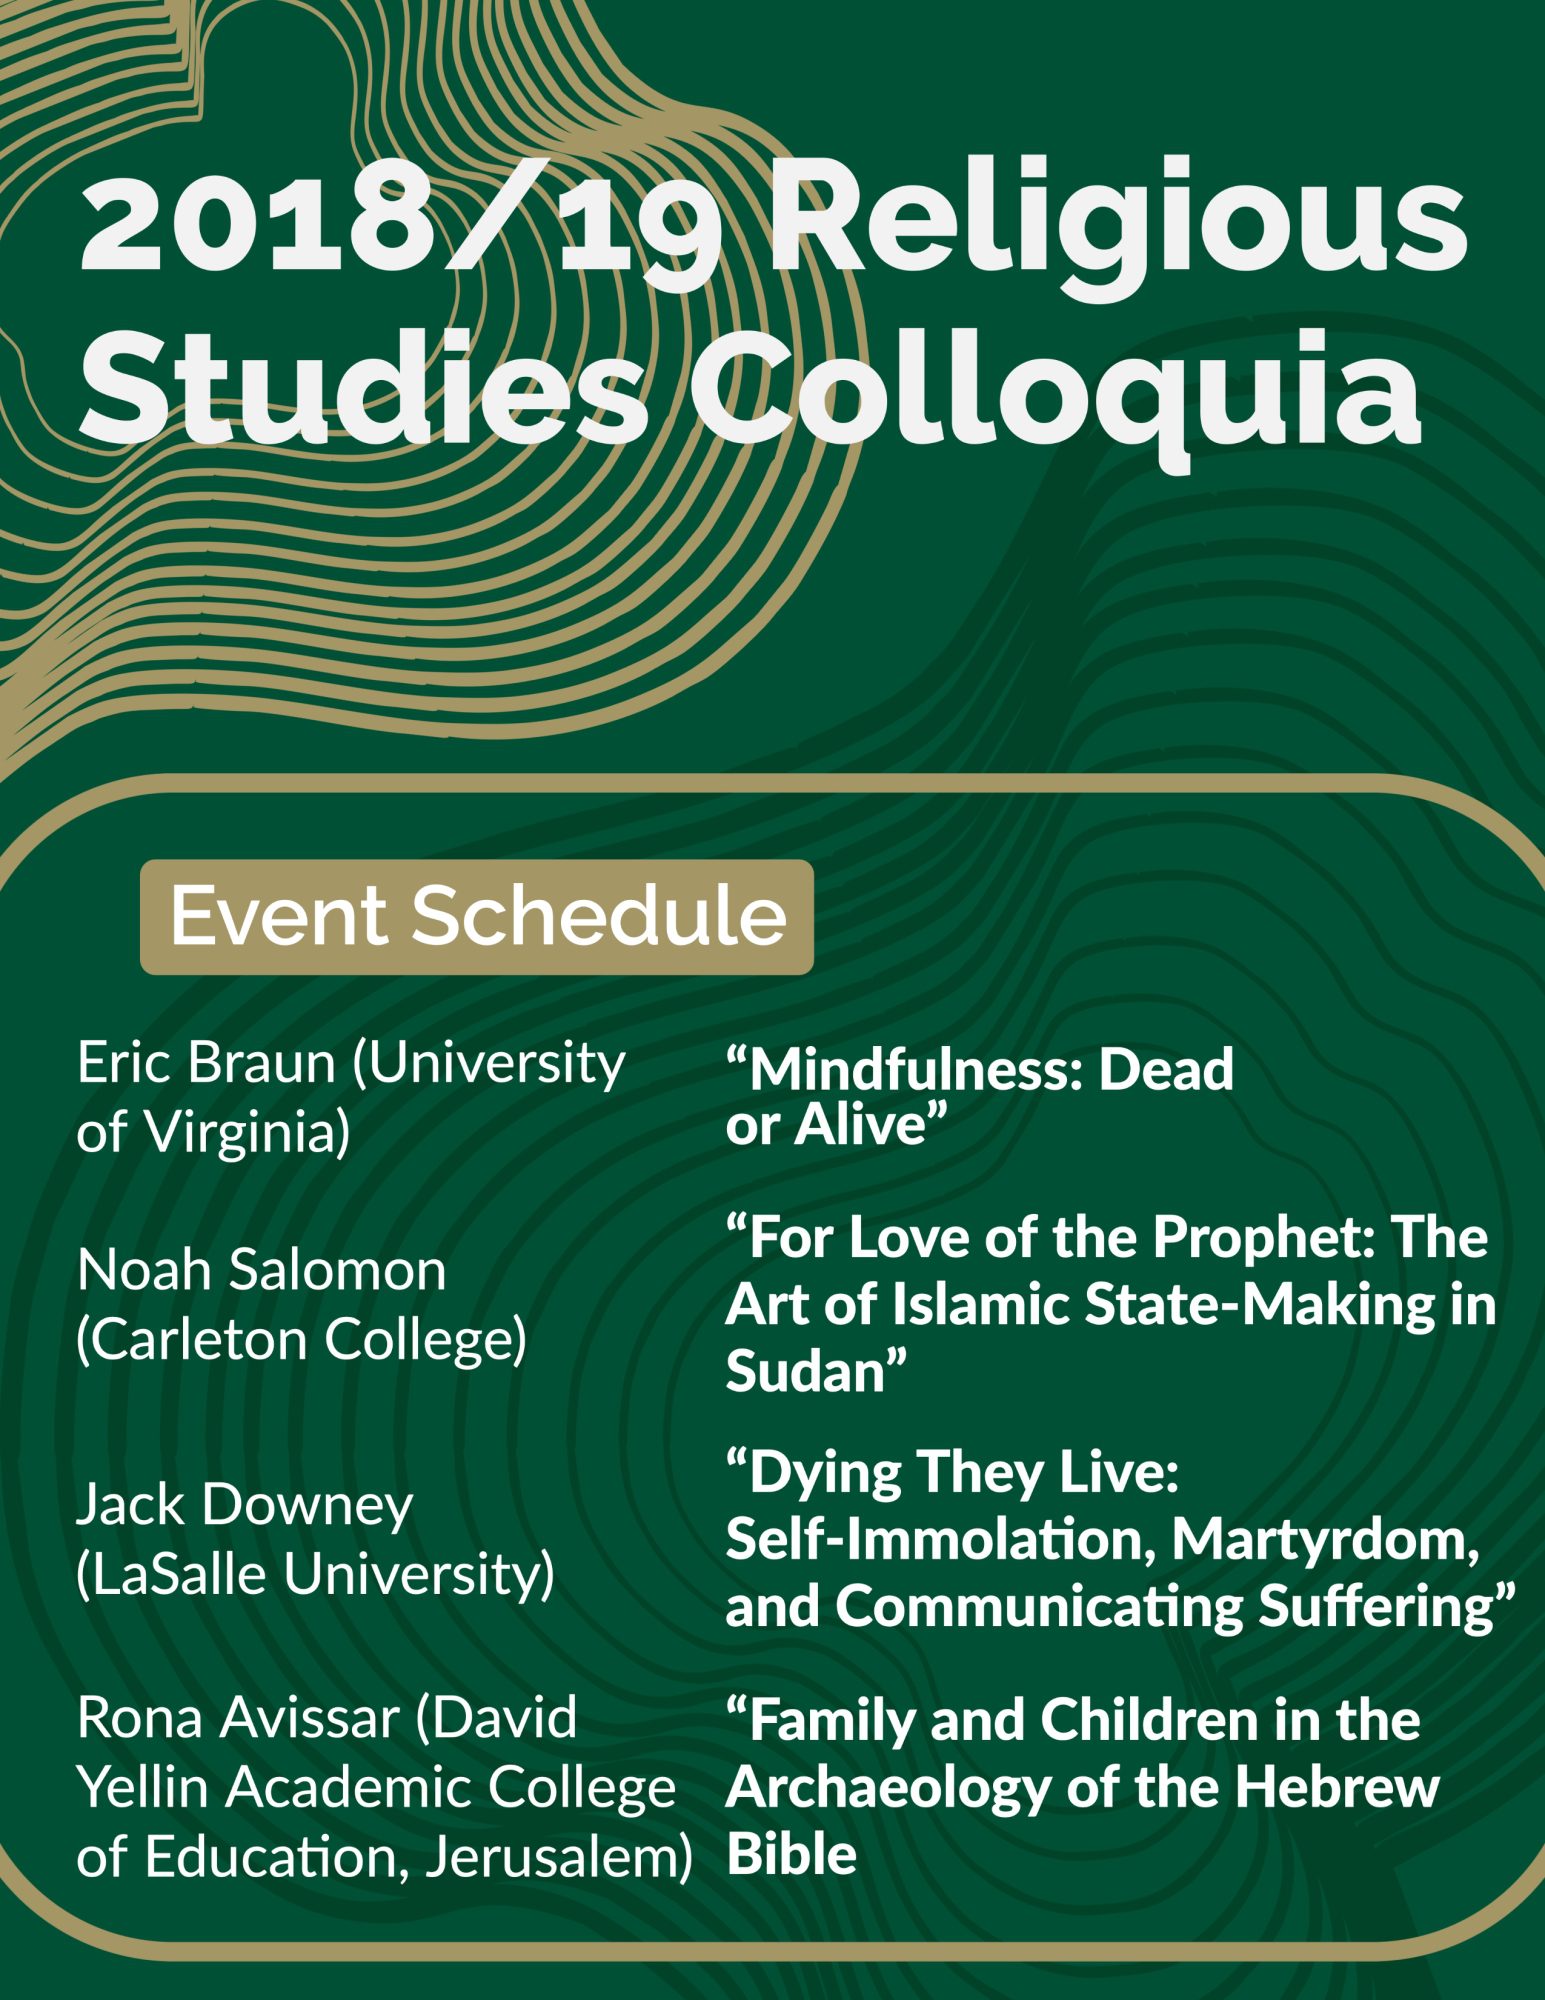 2018/19 Religious Studies Colloquia
Event Schedule